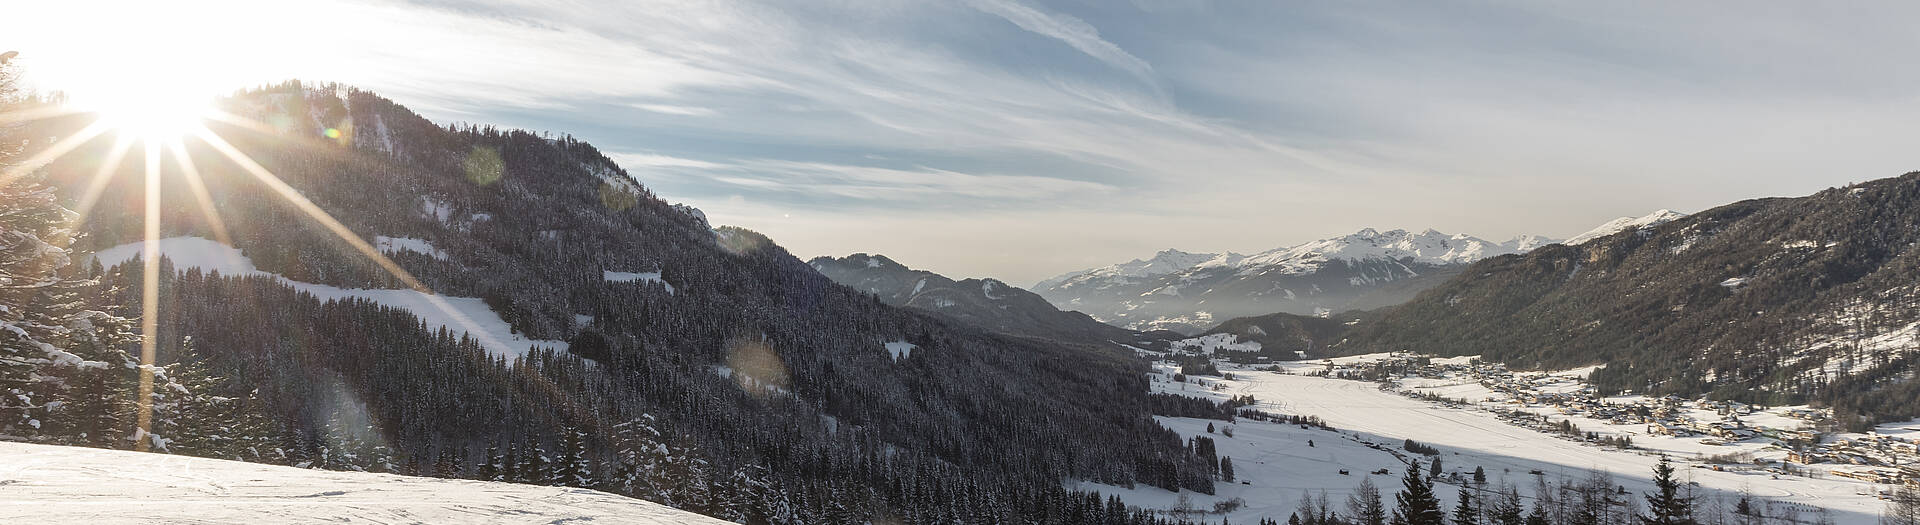 Region Weissensee_Winter_Panorama